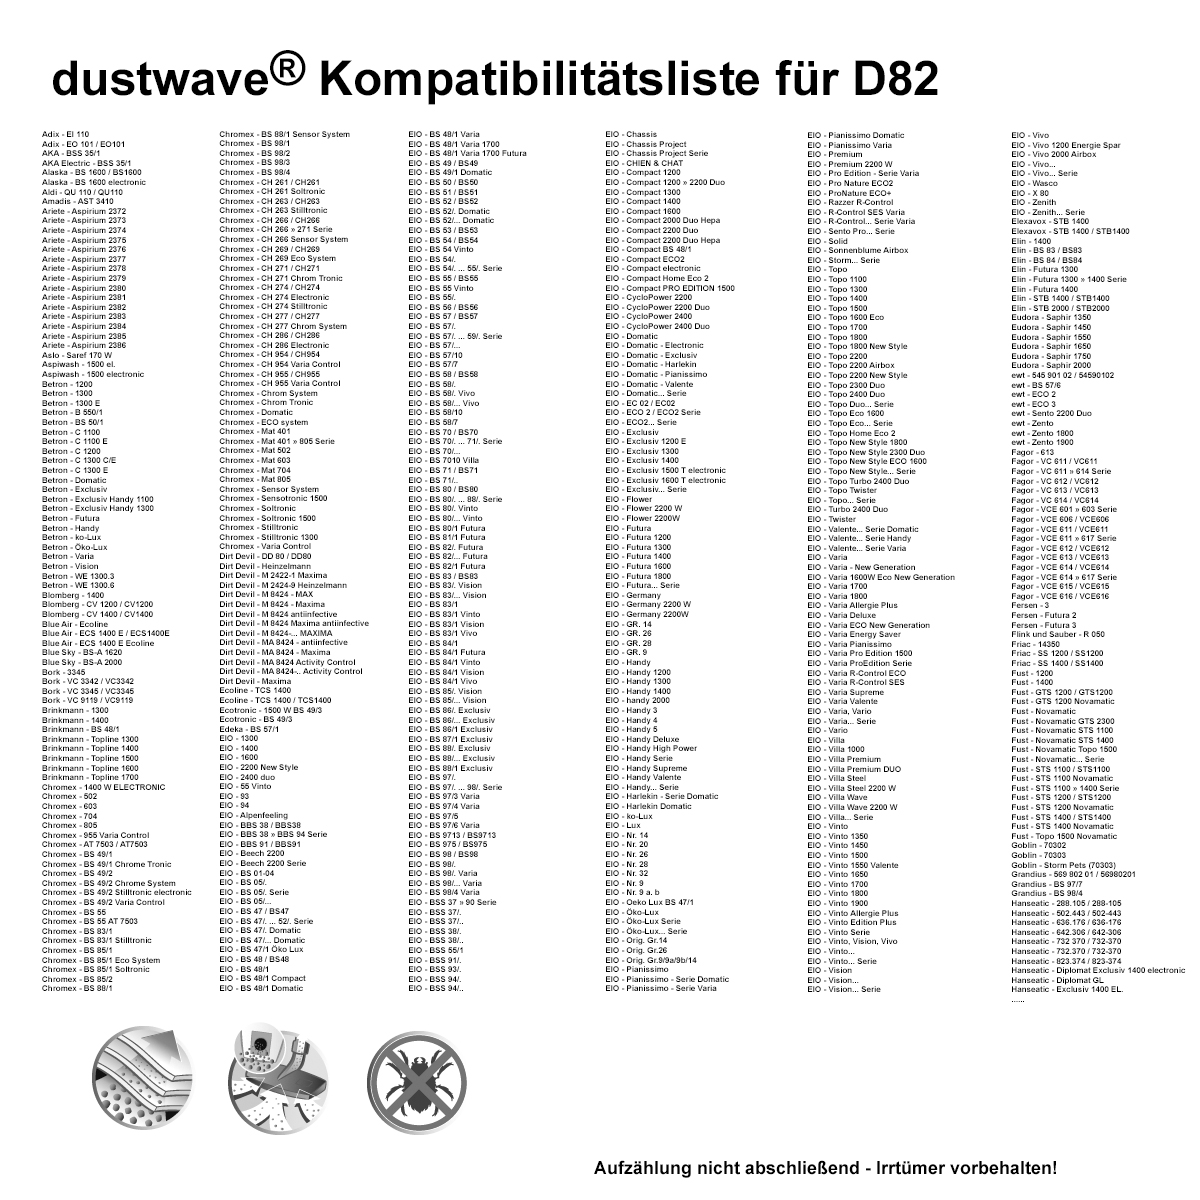 Dustwave® 10 Staubsaugerbeutel für Alaska BS 1600 electronic - hocheffizient, mehrlagiges Mikrovlies mit Hygieneverschluss - Made in Germany